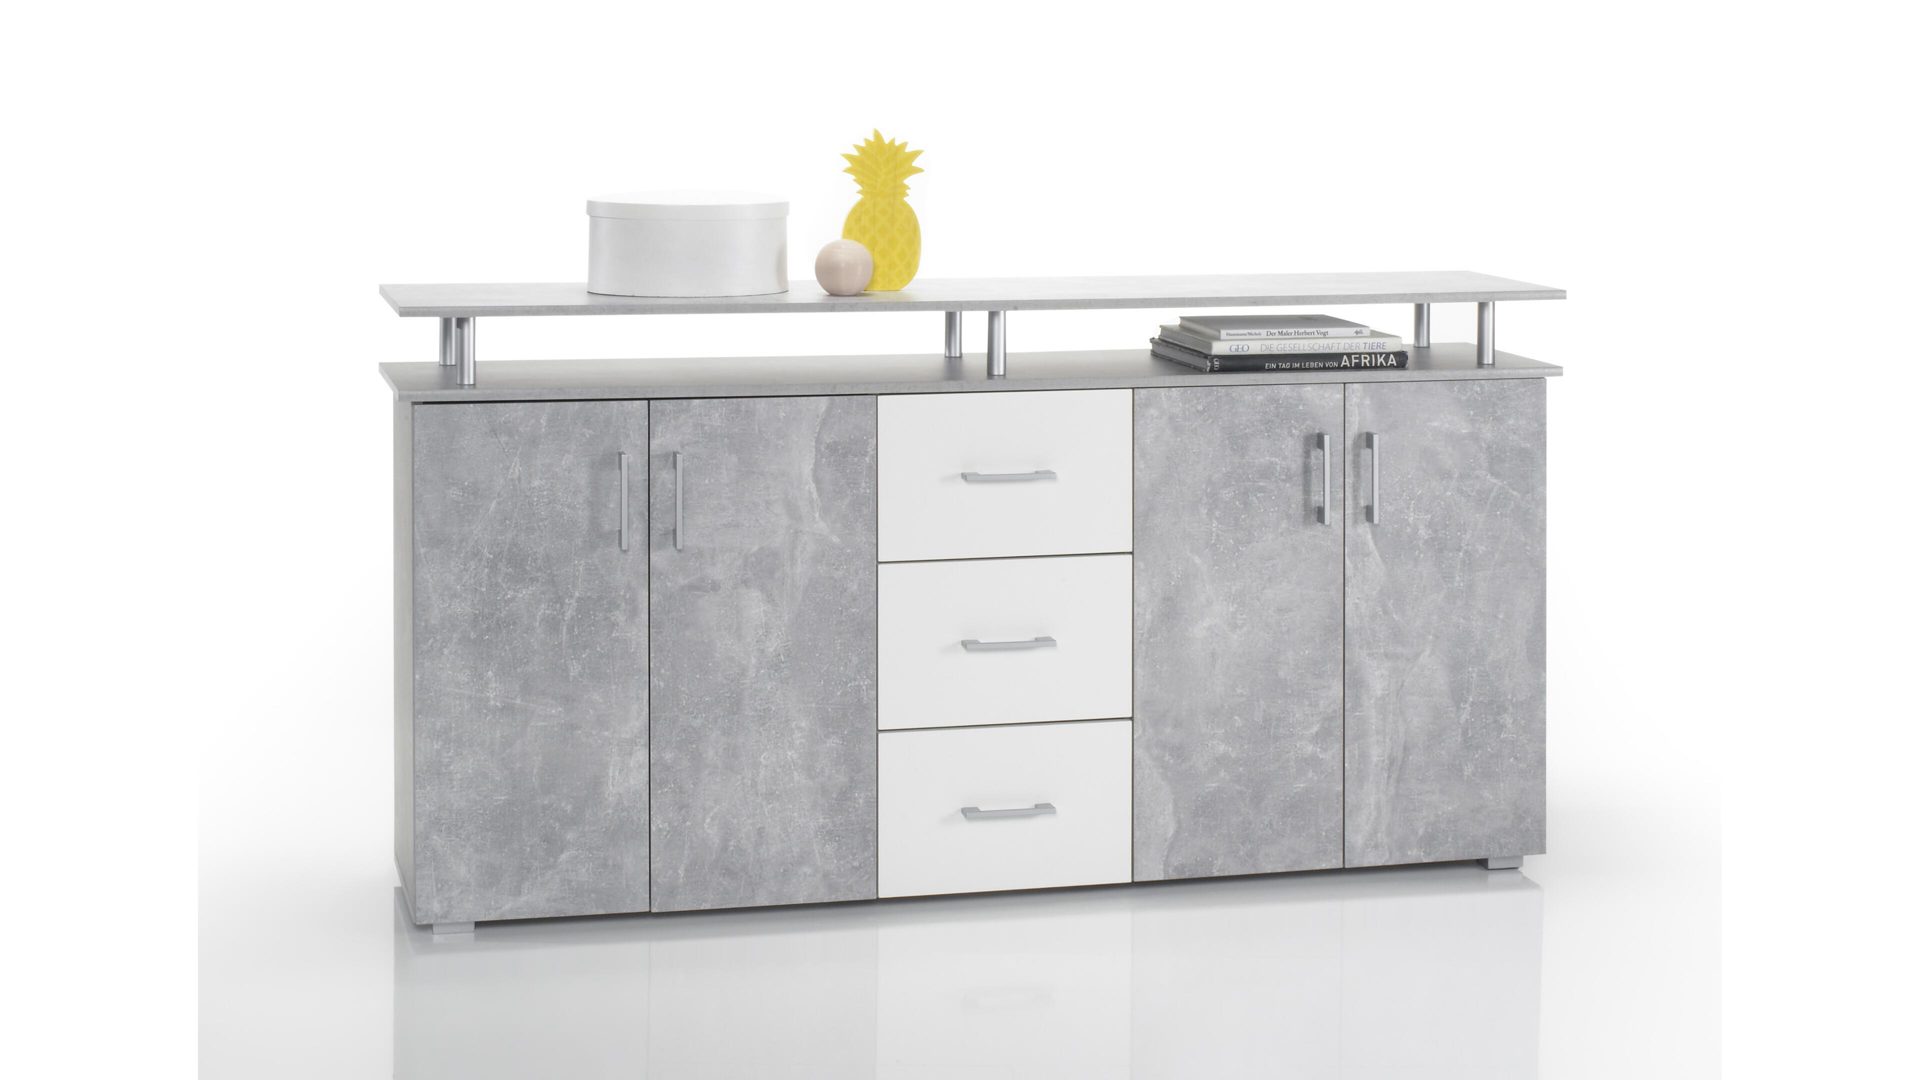 Sideboard Bega consult aus Holz in Grau Sideboard betonfarbene & weiße Kunststoffoberflächen – vier Türen, drei Schubladen